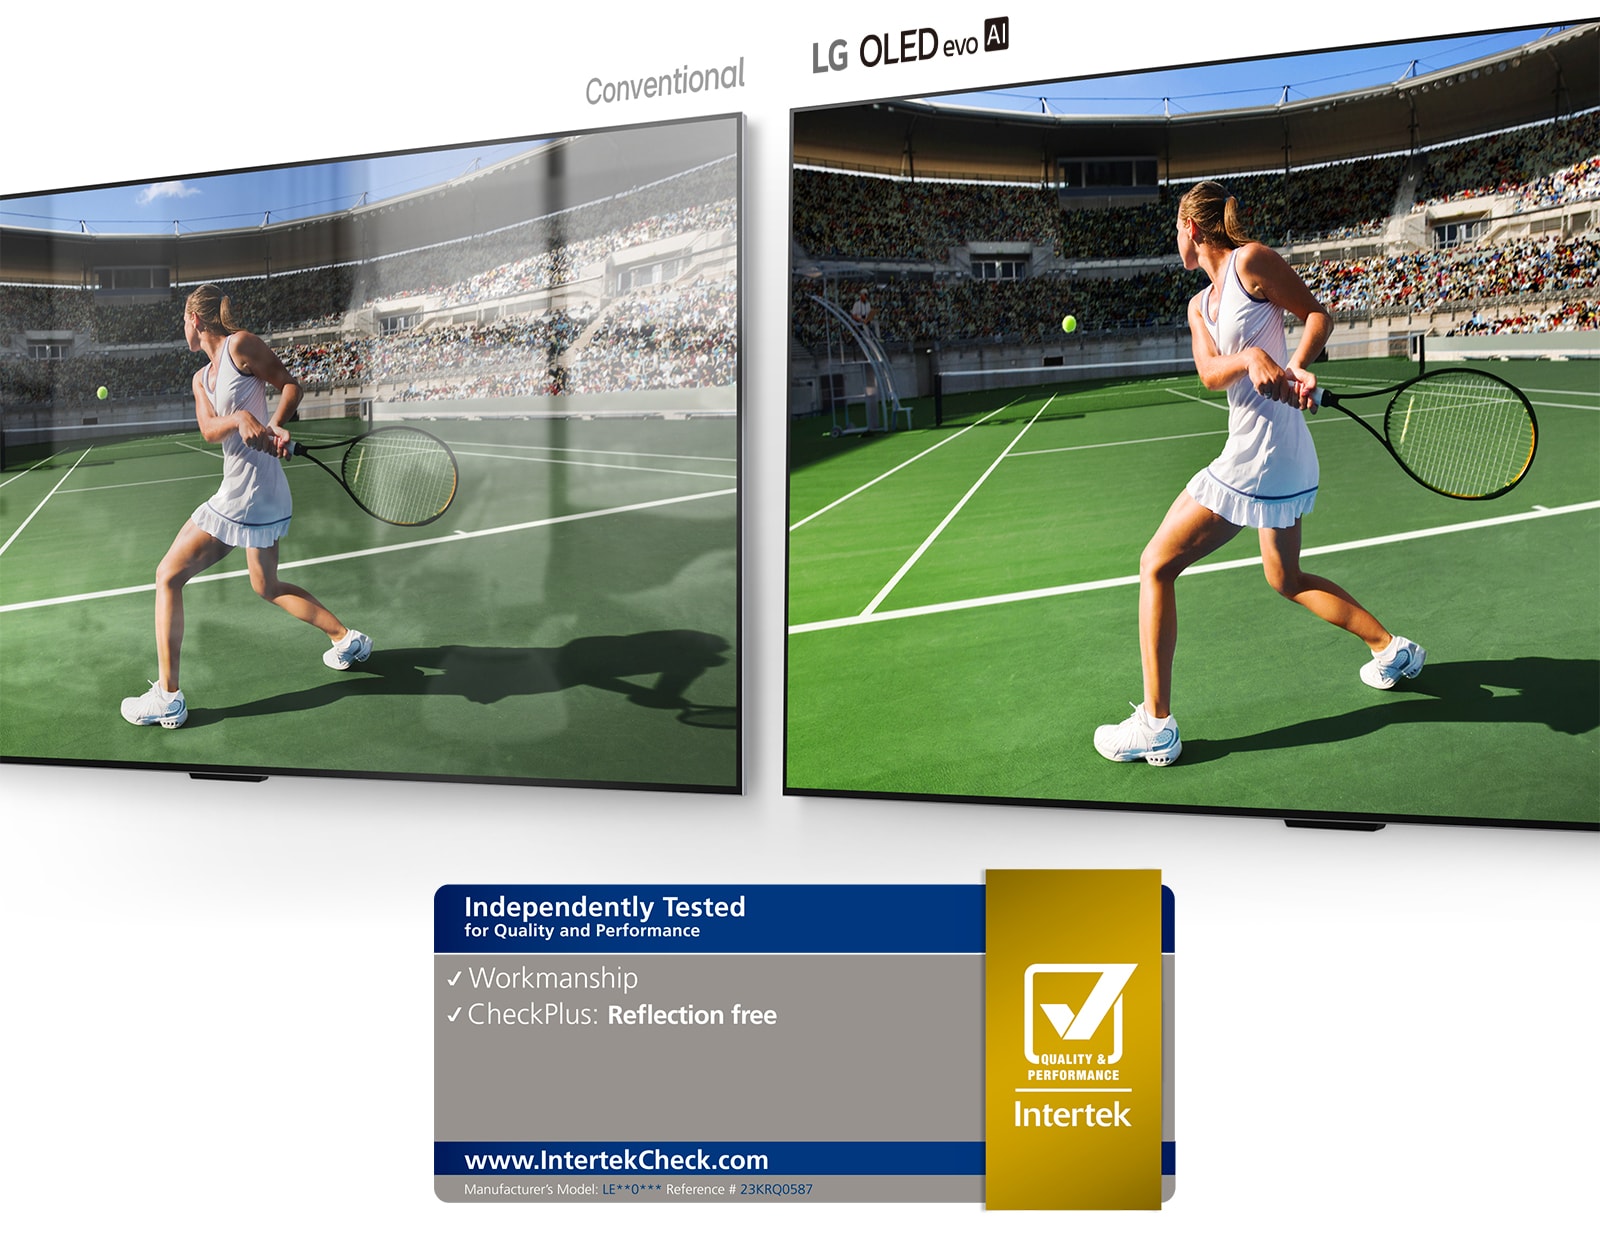 Naľavo konvenčný televízor zobrazuje tenistu na štadióne s odrazom miestnosti na obrazovke. Napravo televízor LG OLED evo AI G4 zobrazuje rovnaký obraz tenistu na štadióne bez odrazu v miestnosti, pričom obraz vyzerá jasnejšie a farebnejšie.